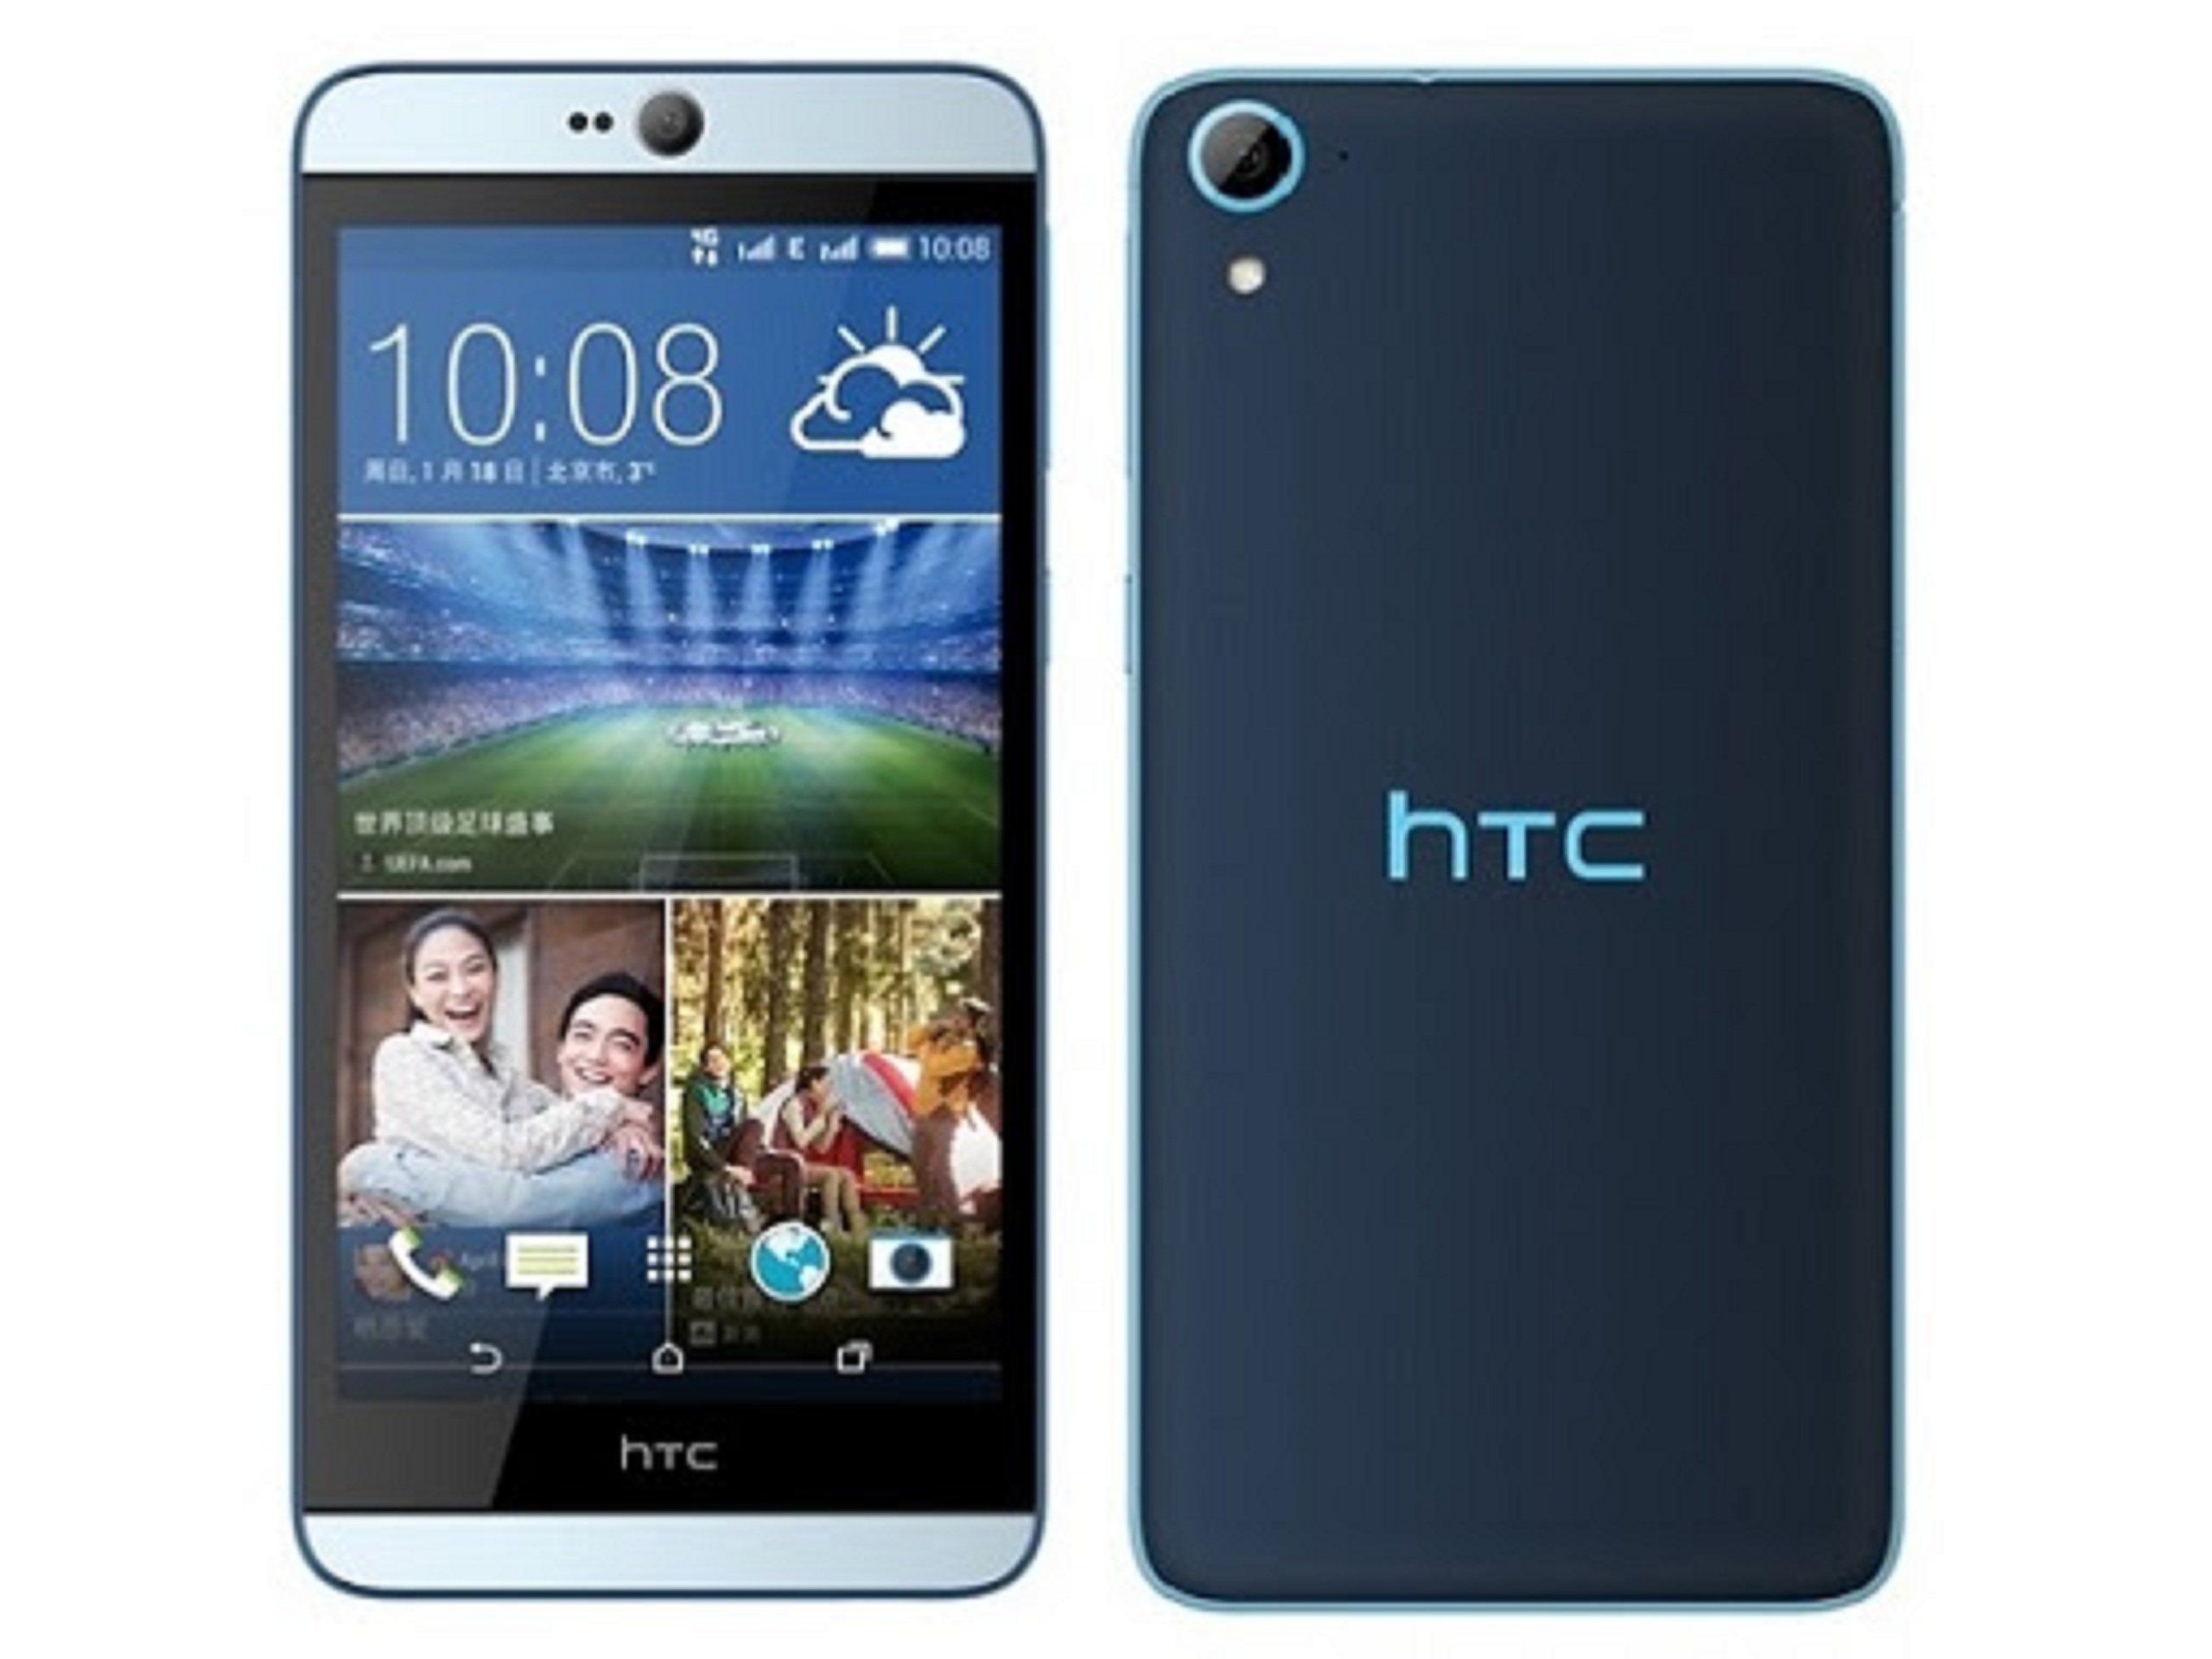 HTC DESIRE 826 - ( ĐEN,TRẮNG) FULLBOX - RAM 2GB /16GB CPU:Snapdragon 615 8 nhân 64-bit